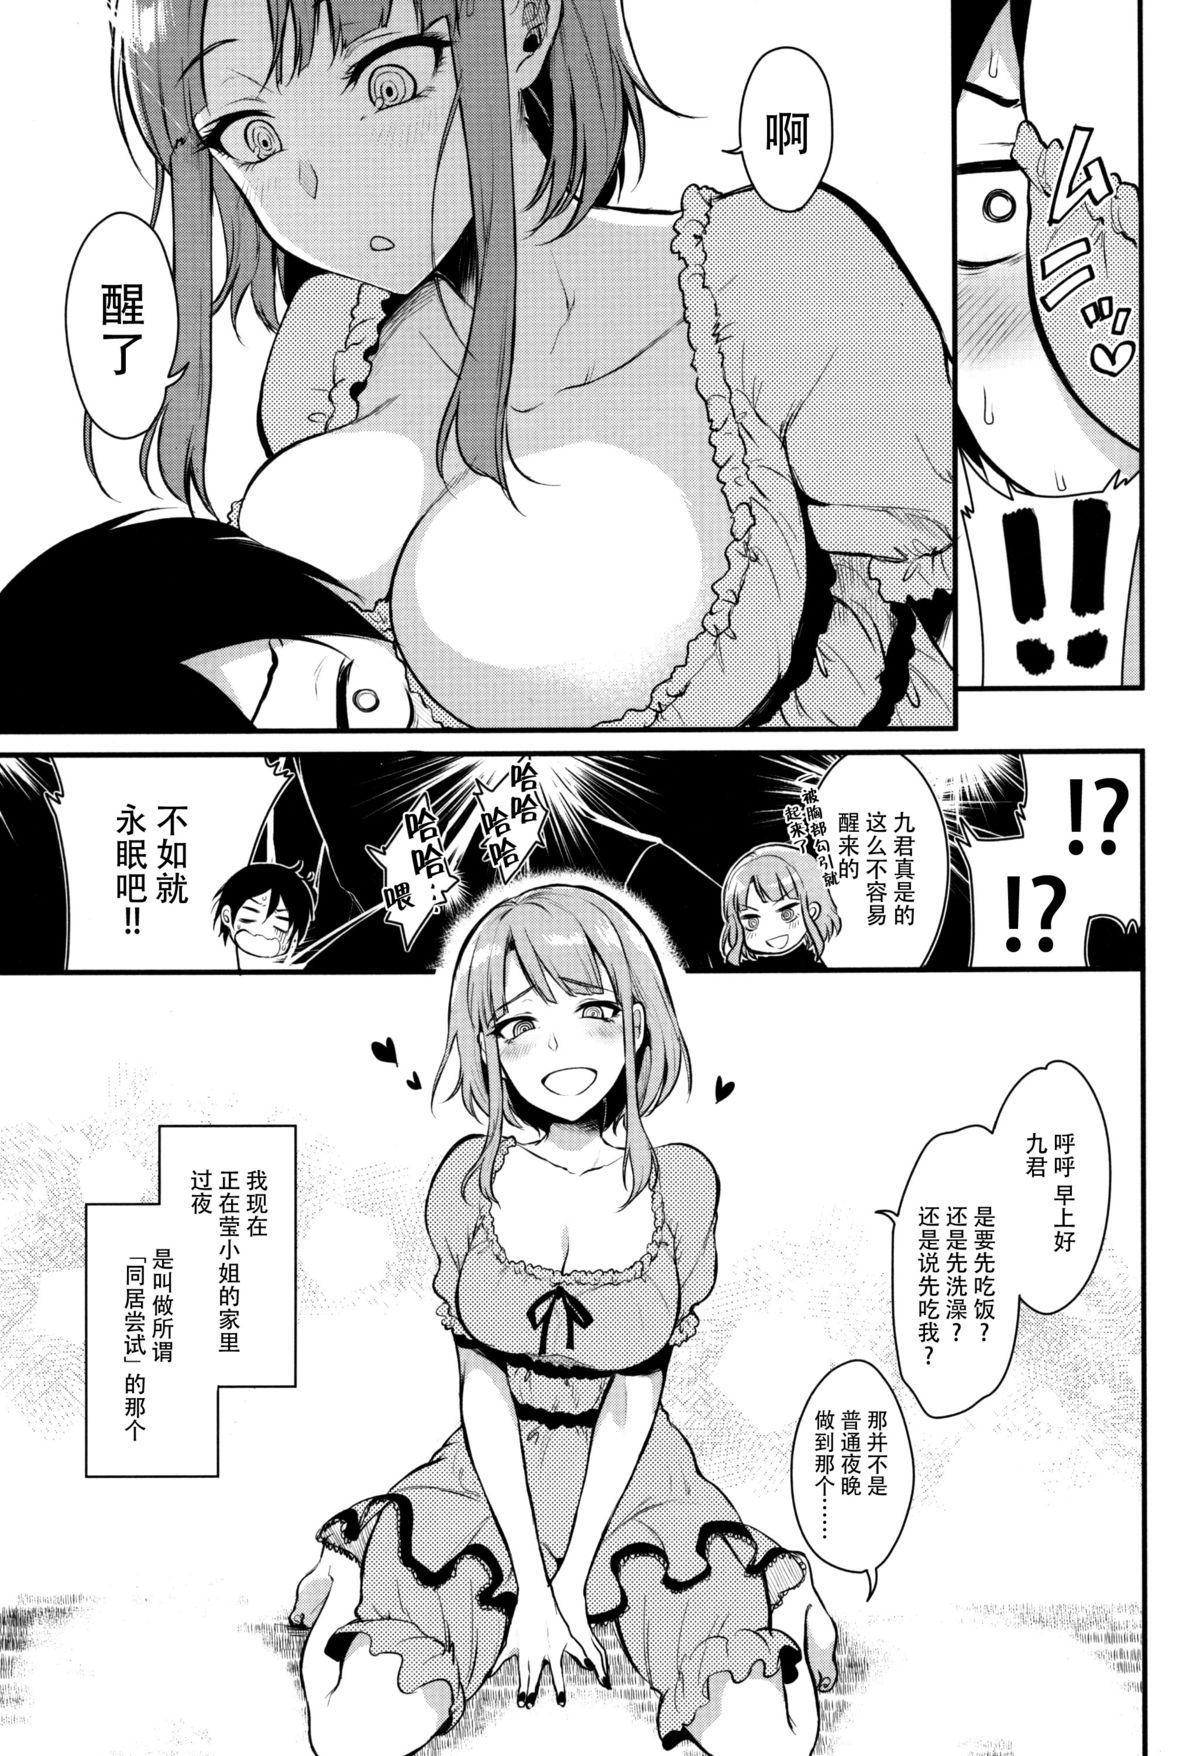 Mother fuck Otona no Dagashi 3 - Dagashi kashi Nice Tits - Page 8